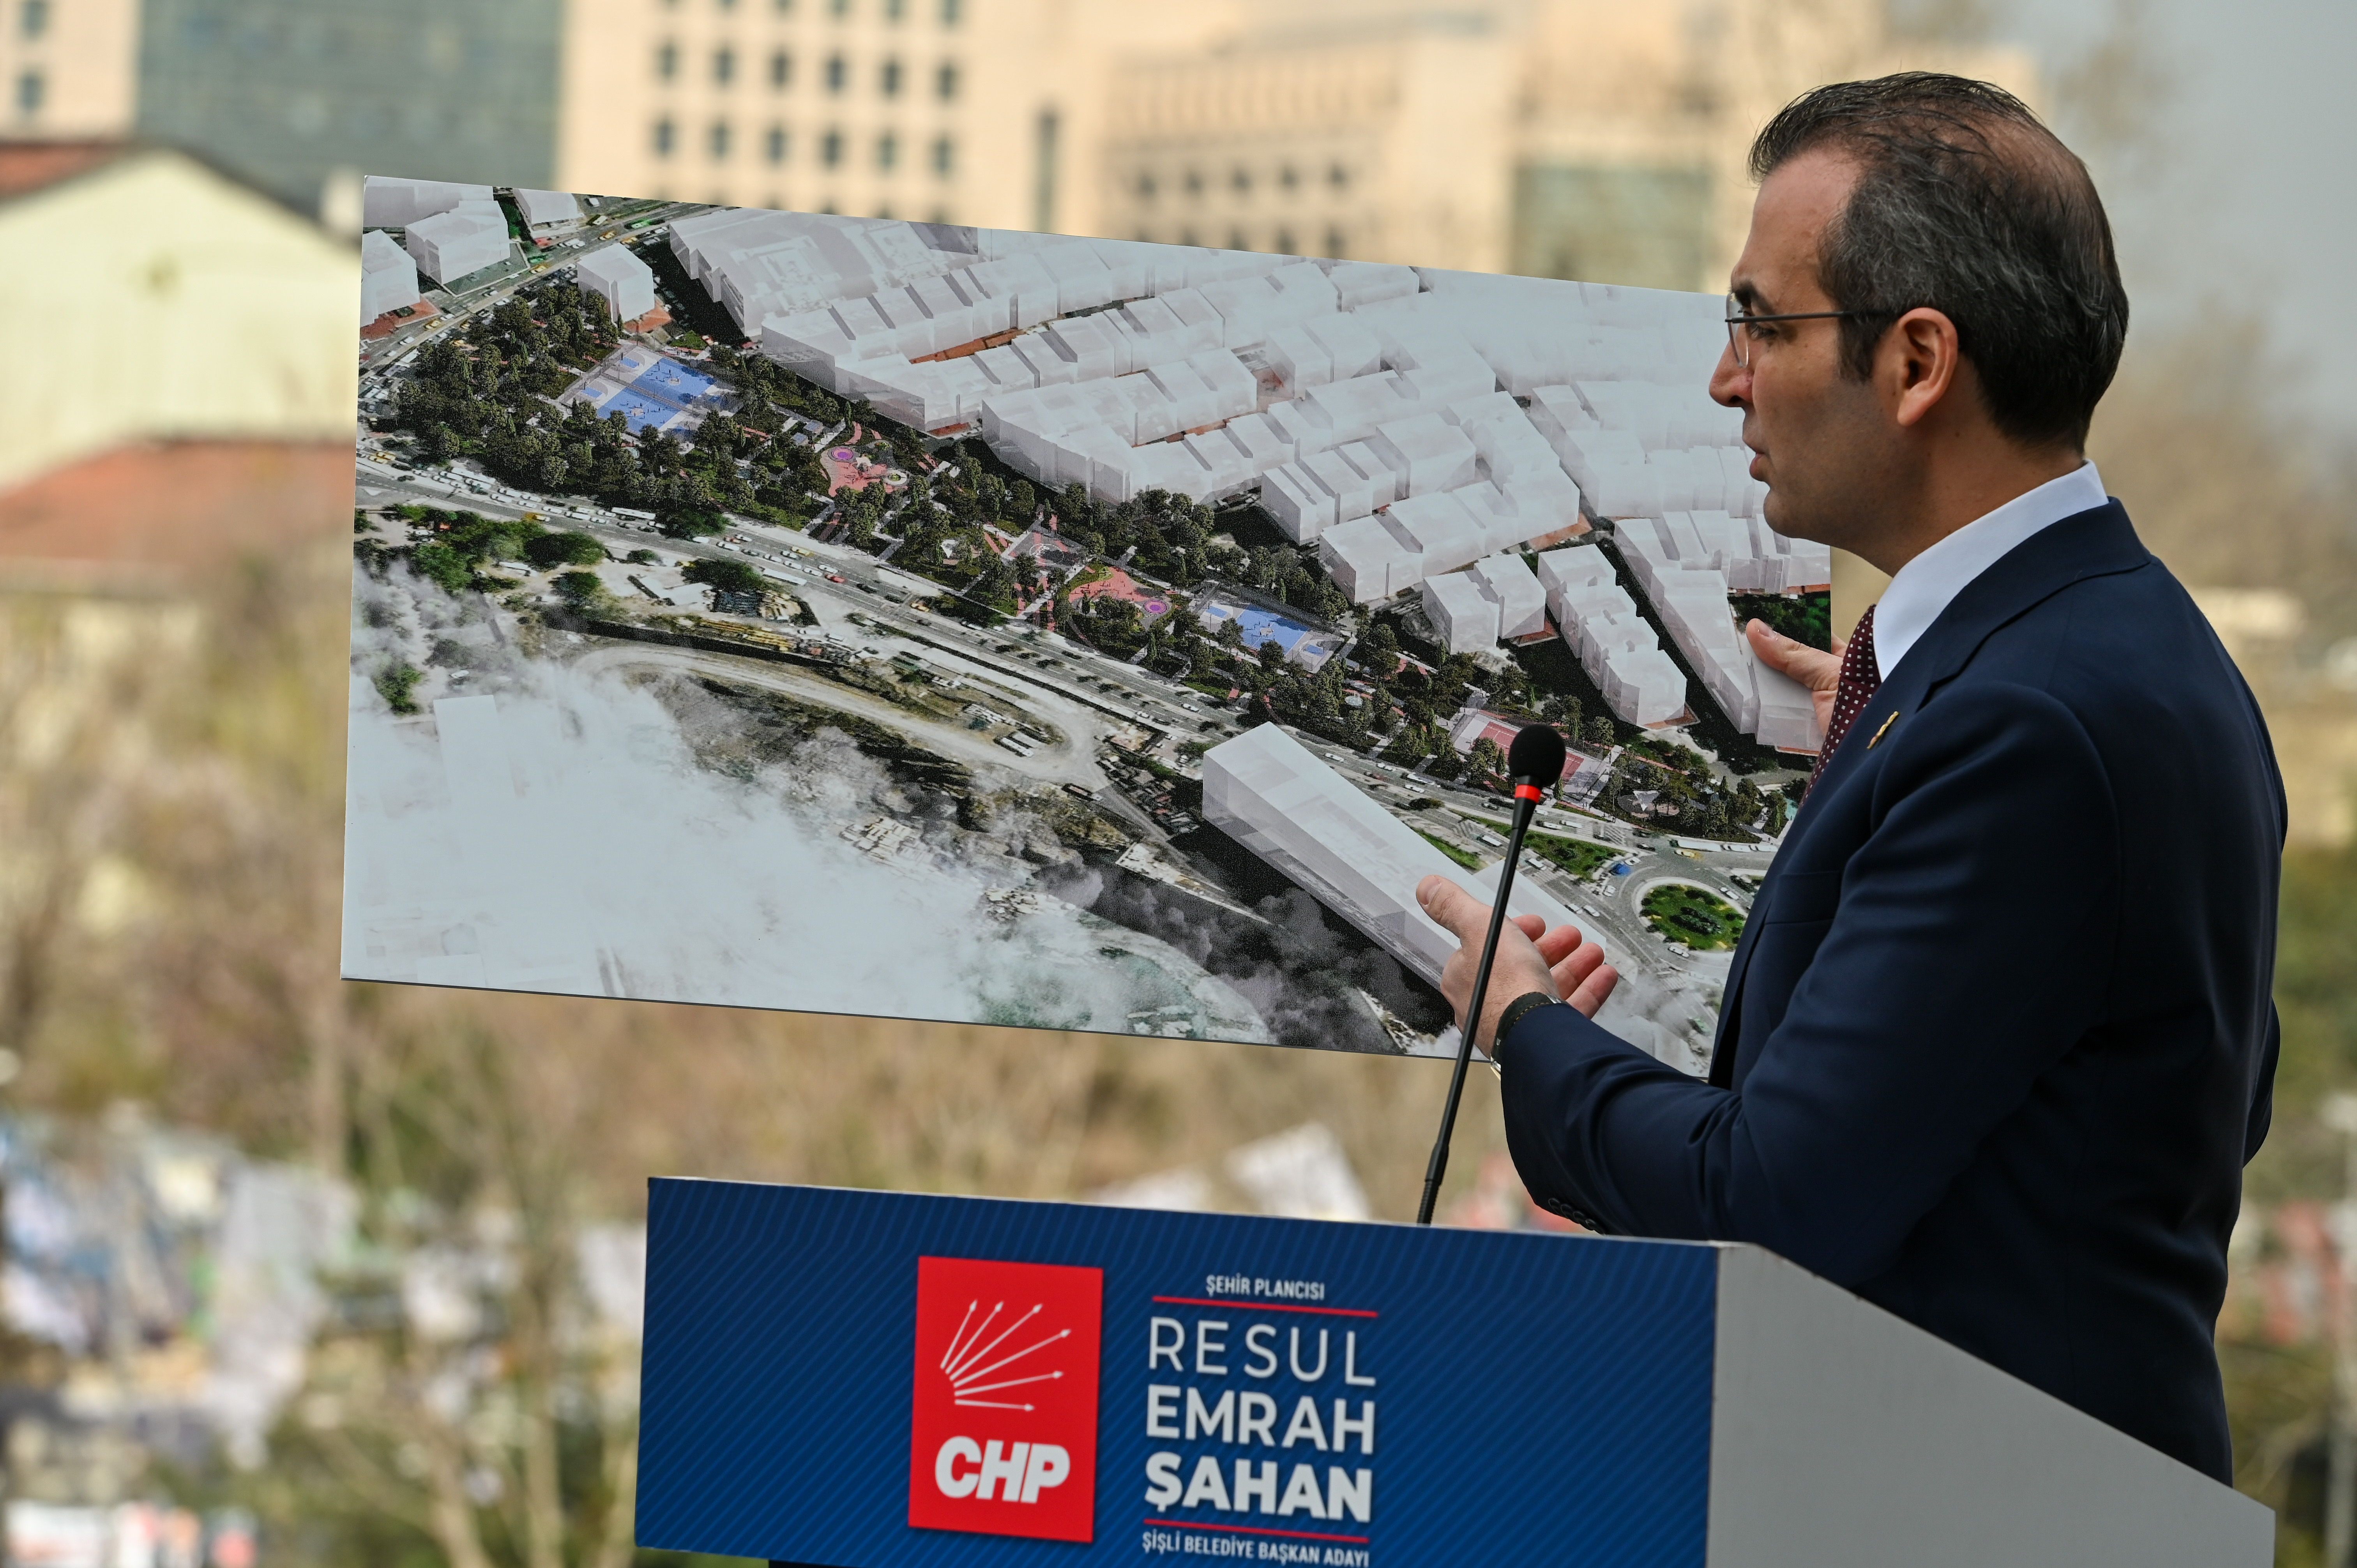 CHP Şişli Belediye Başkan Adayı Şahan: ”Şişli’ye yapılmak isteneni biliyoruz”